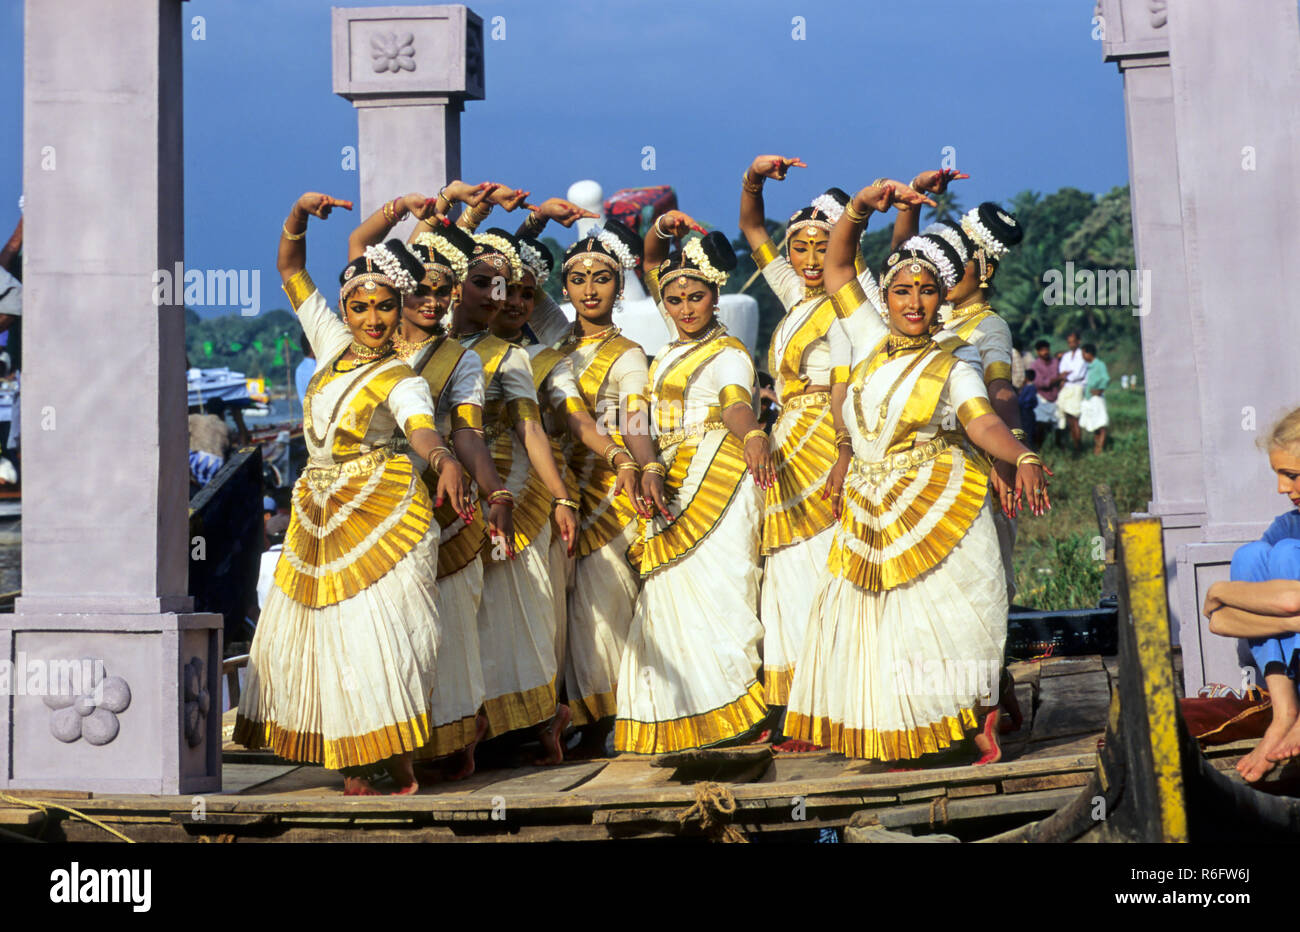 Les femmes qui exécutent la danse classique indienne Mohiniattam, Kerala, Inde Banque D'Images